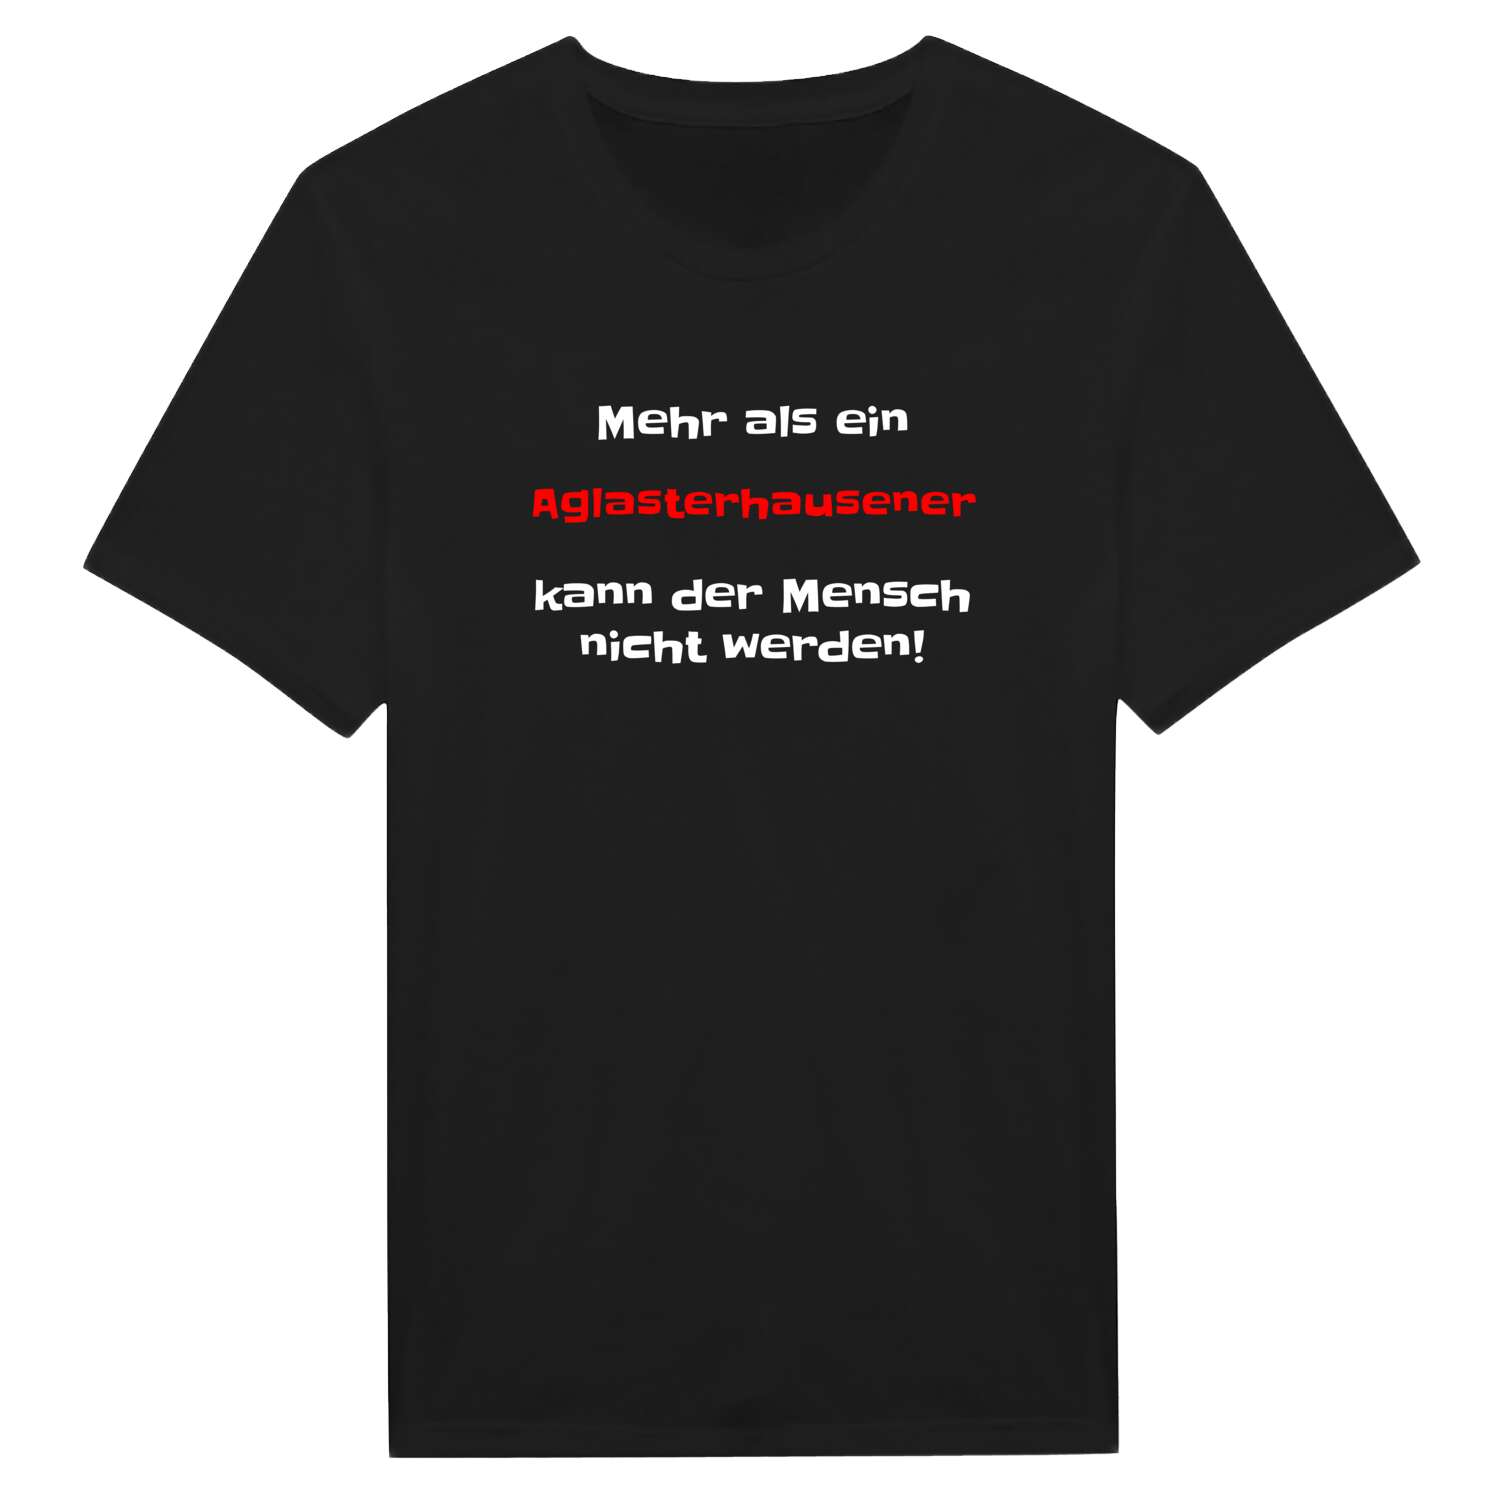 Aglasterhausen T-Shirt »Mehr als ein«